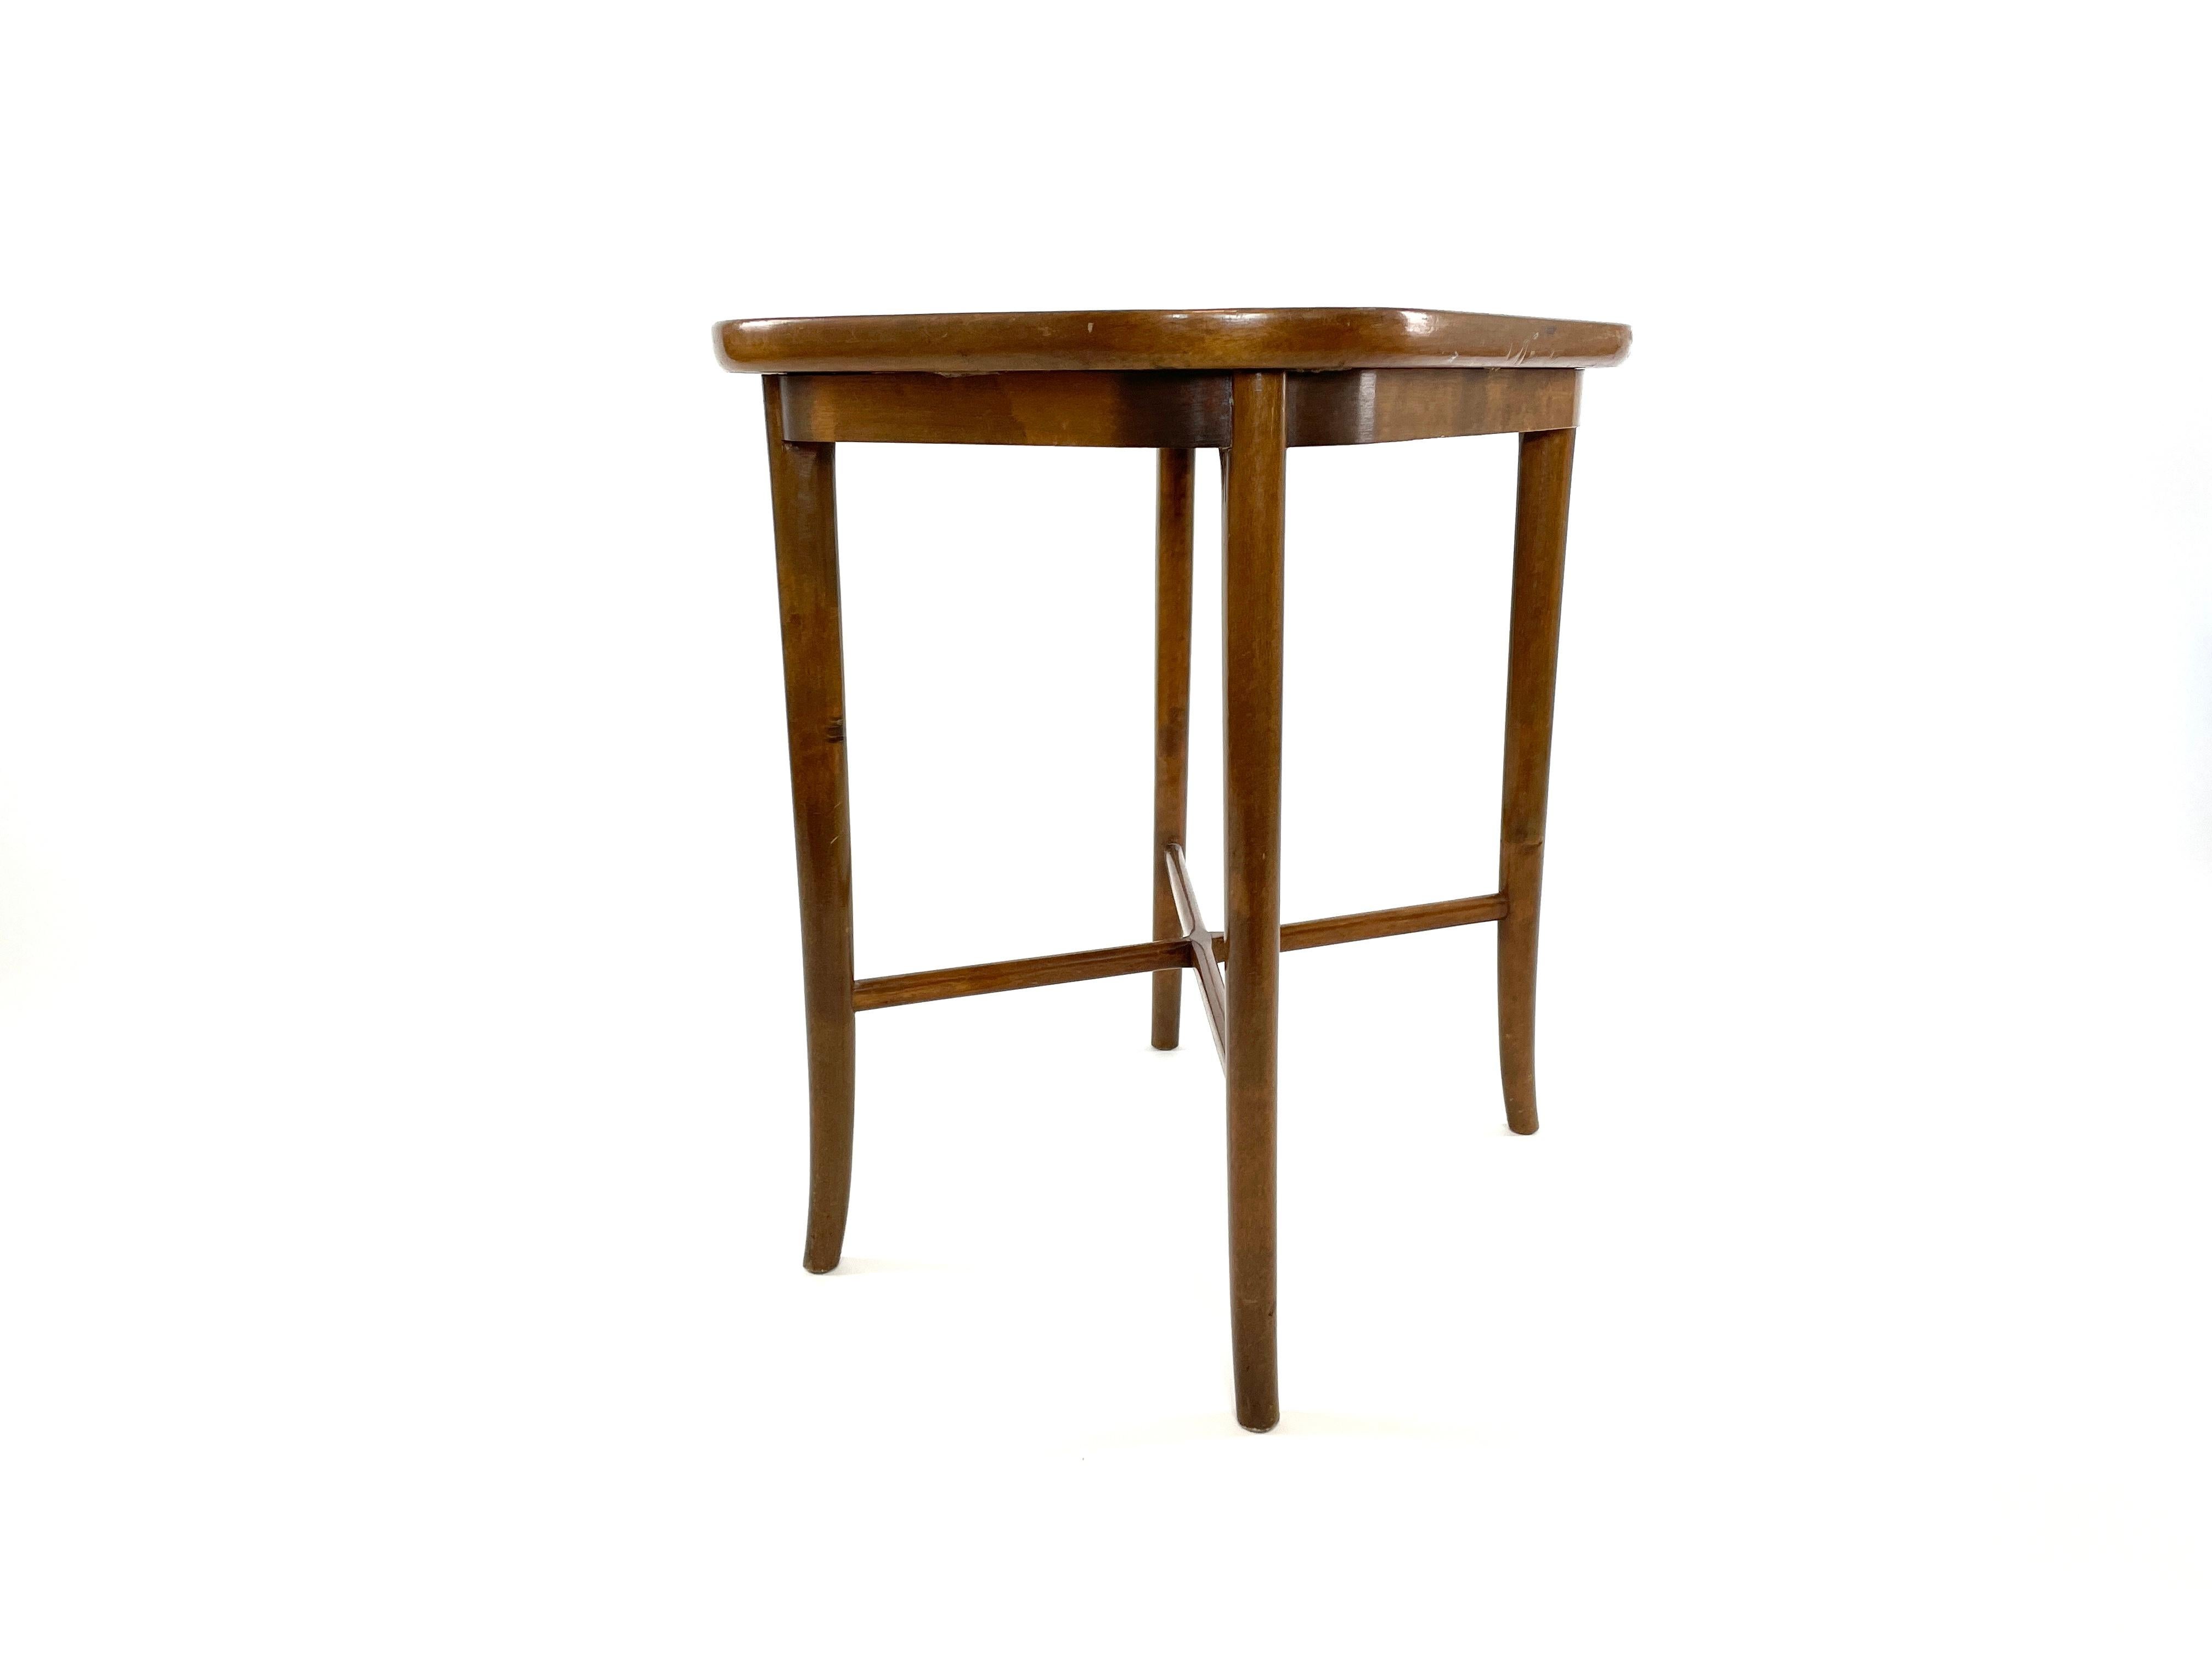 La table d'appoint finlandaise moderne du milieu du siècle, conçue et produite par Carl-Johan Boman dans les années 1940, représente son style distinctif qui combine des lignes épurées, la praticité et une esthétique minimaliste. Ces créations,